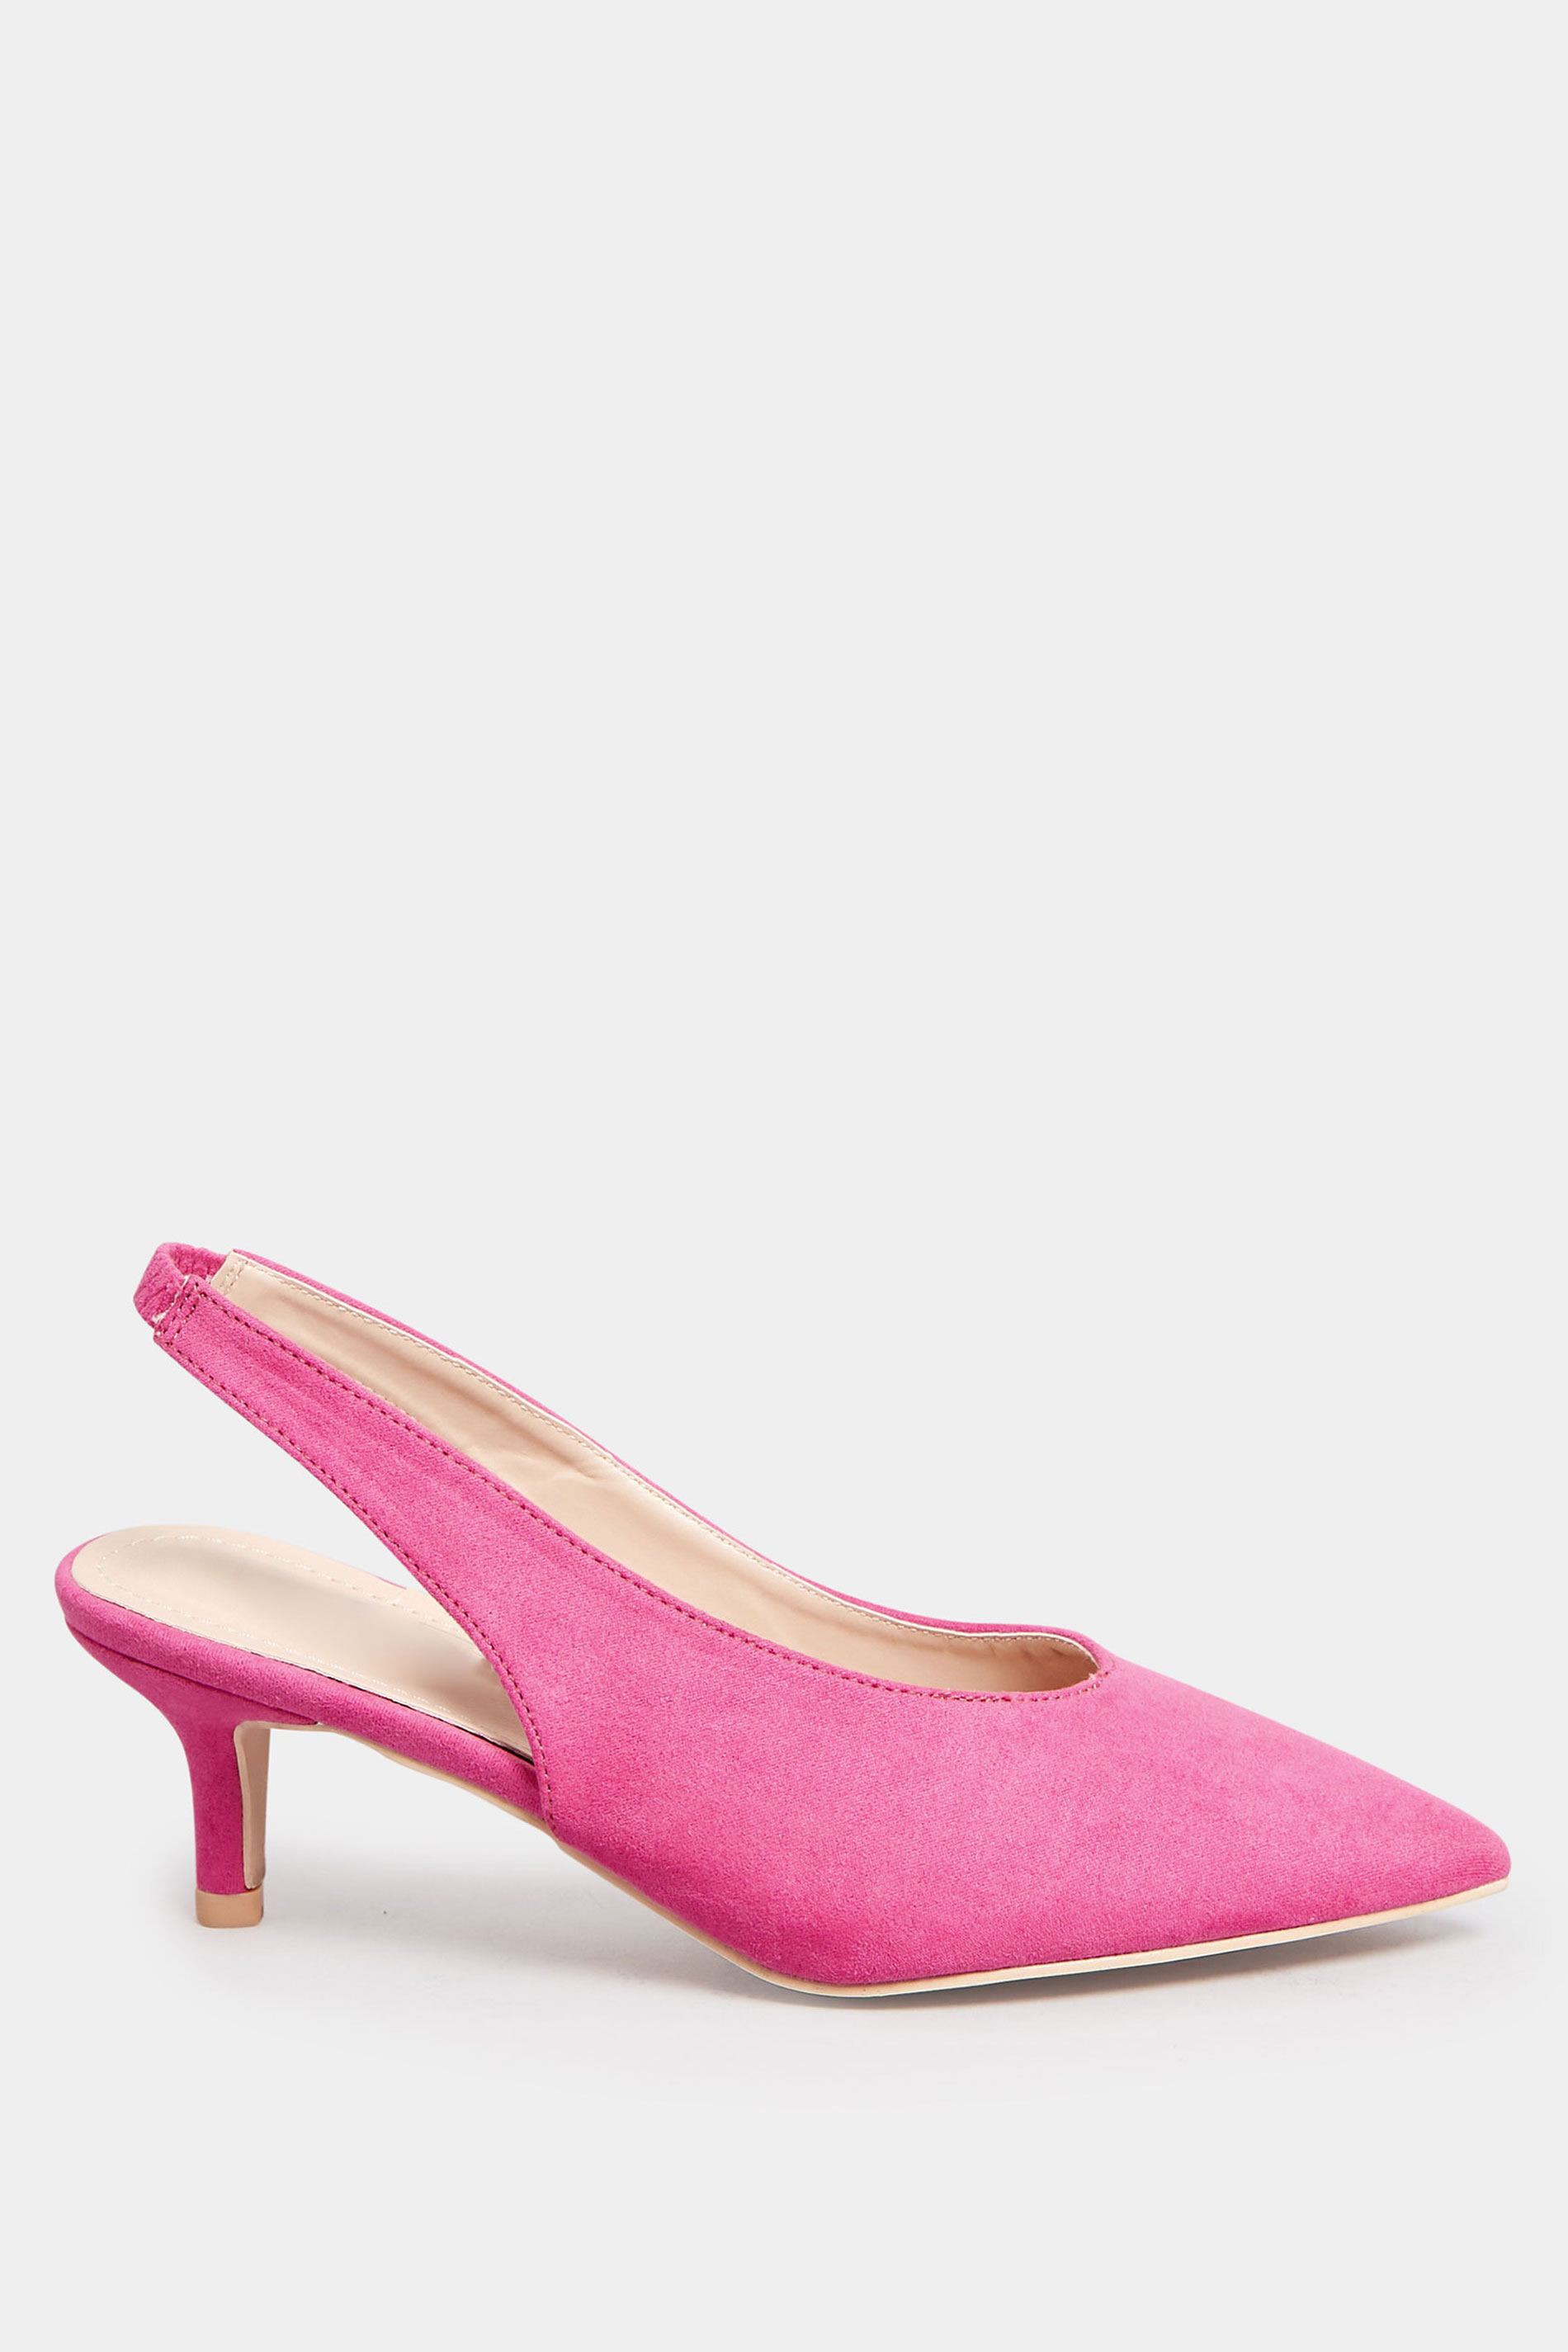 PixieGirl Pink Slingback Kitten Heel Court Shoes In Standard Fit | PixieGirl 2